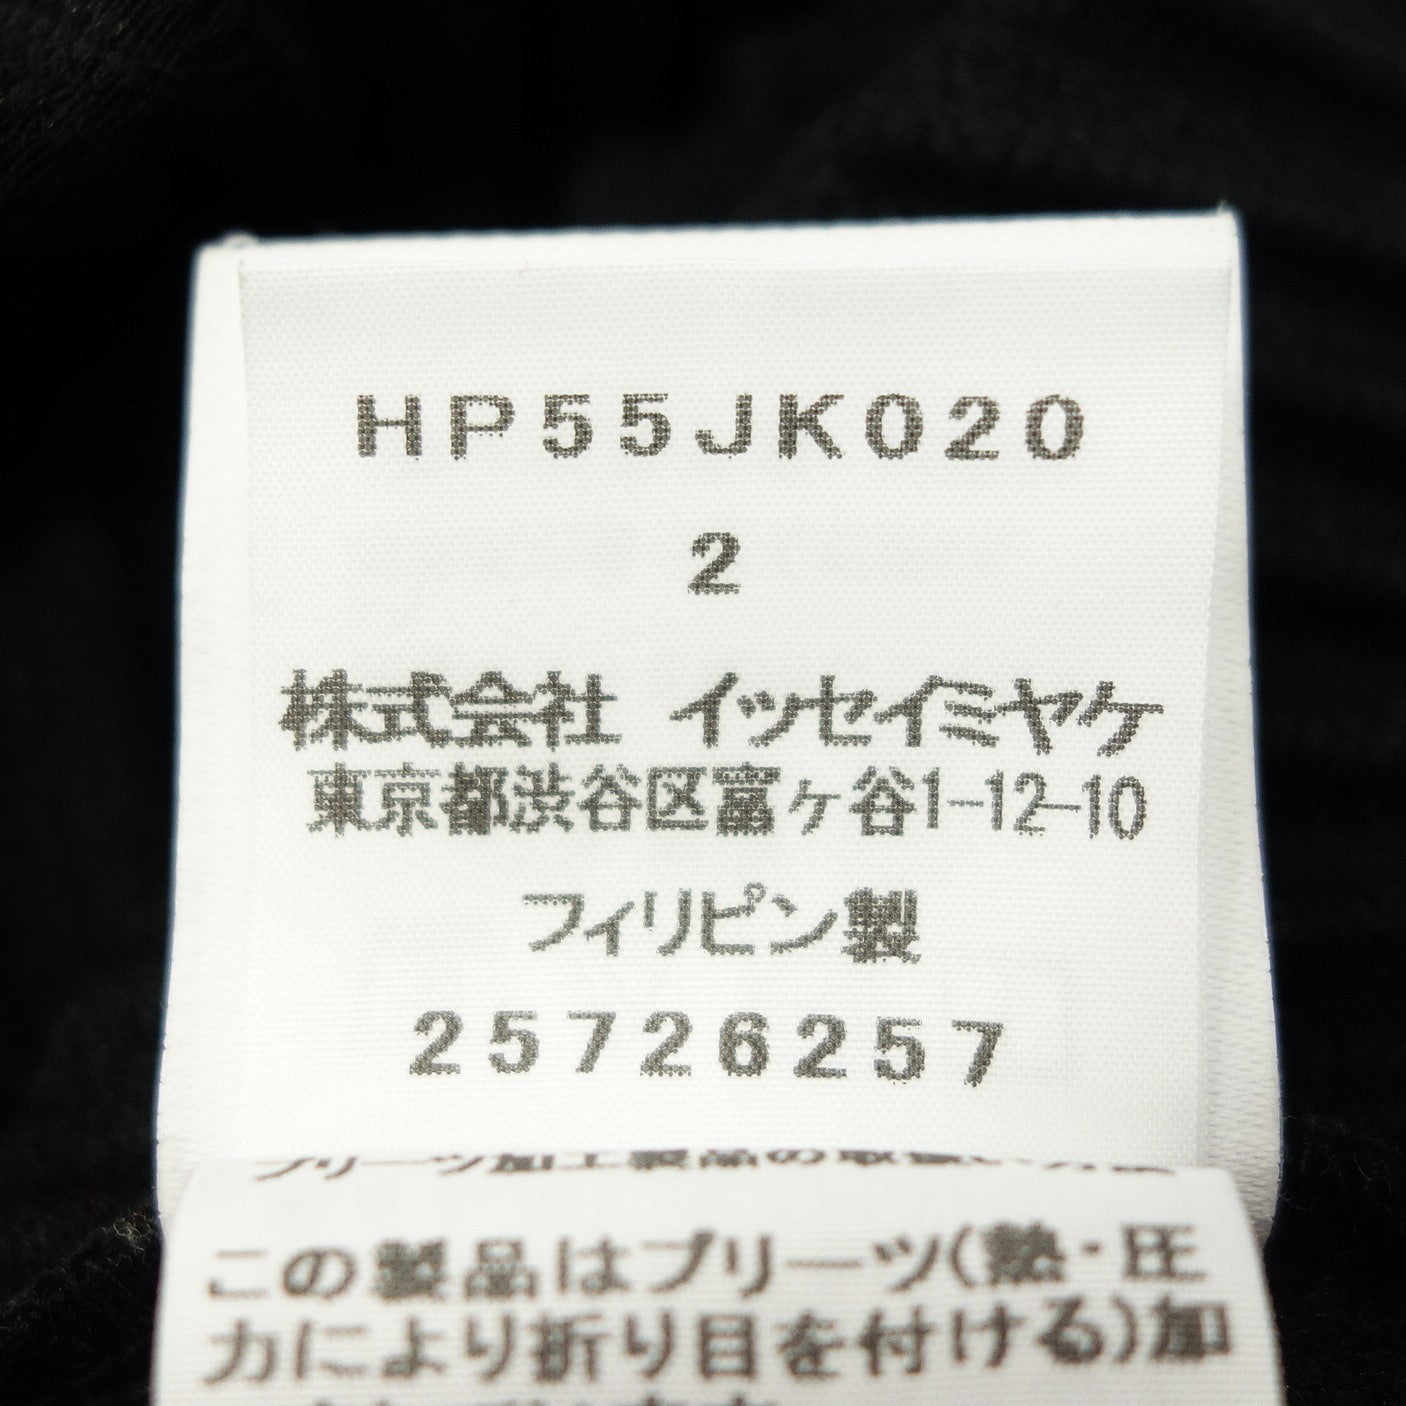 状况良好◆Issey Miyake HOMME PLISSE 短袖 T 恤剪裁和缝制褶皱 HP55JK020 男式 2 号黑色 ISSEY MIYAKE HOMME PLISSE [AFB29] 